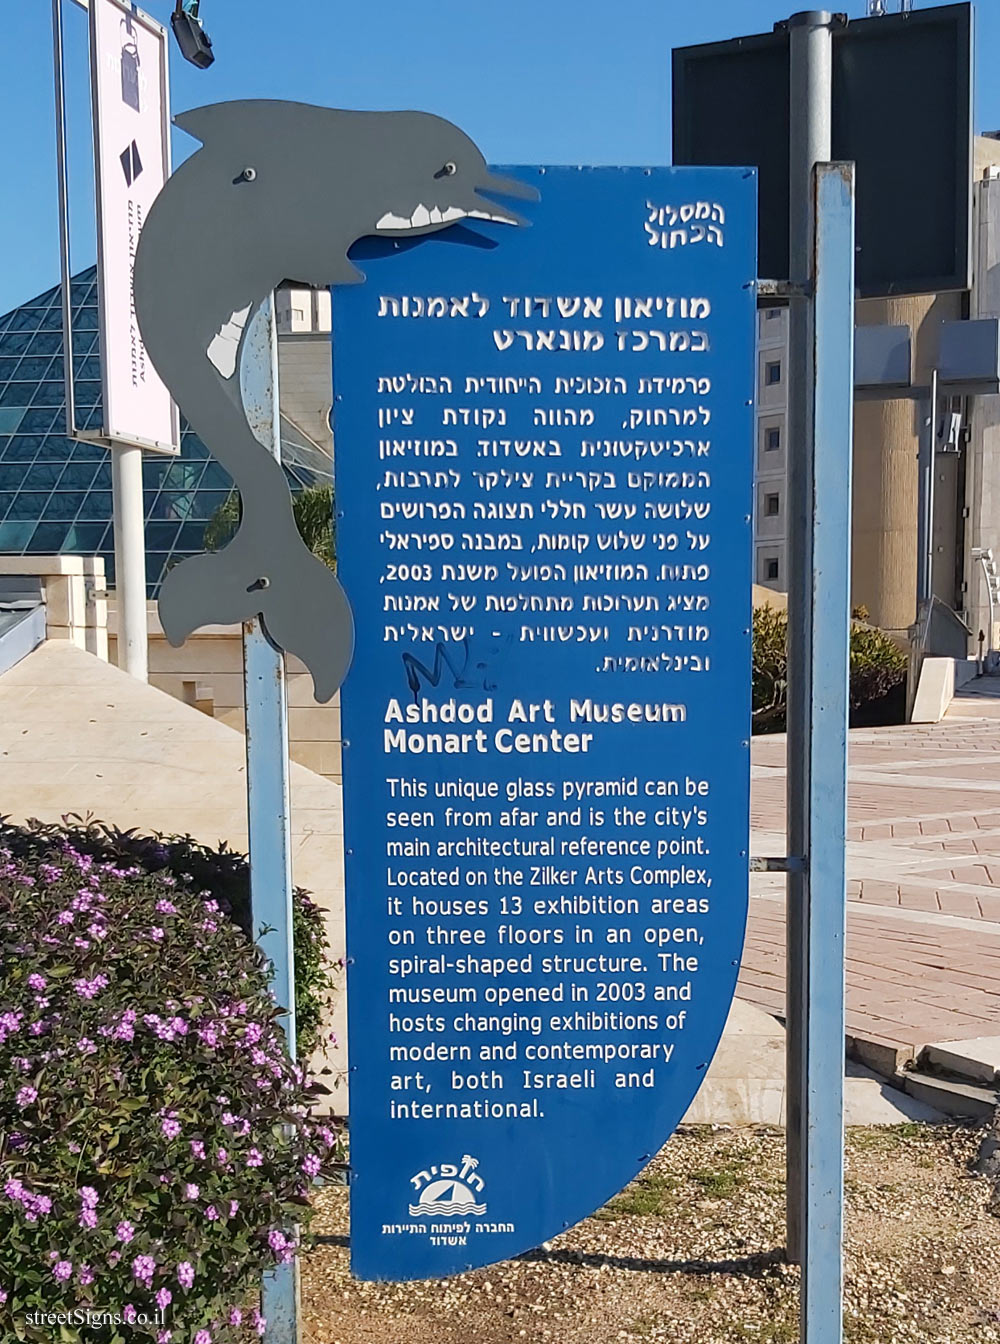 Ashdod -The blue route - Ashdod Art Museum - Monart Center